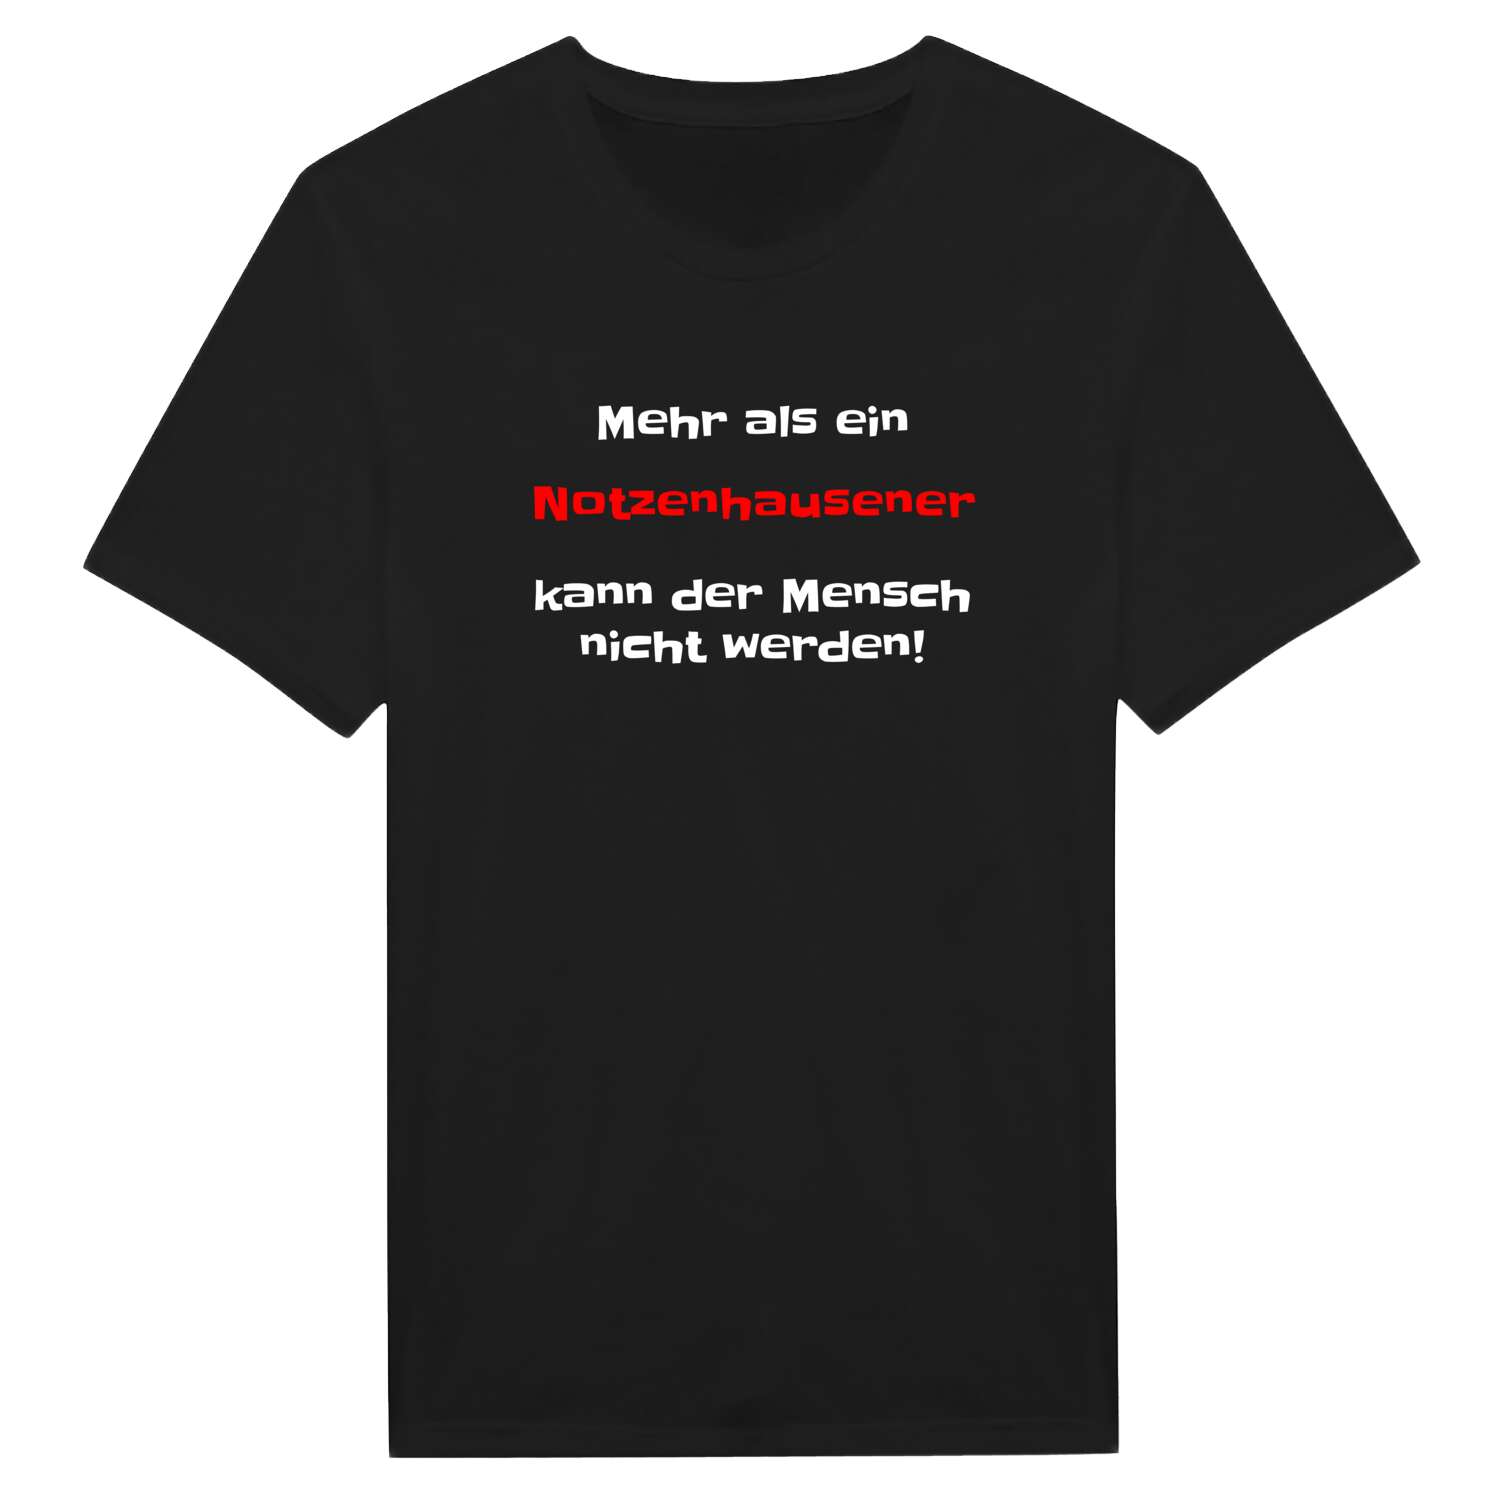 Notzenhausen T-Shirt »Mehr als ein«